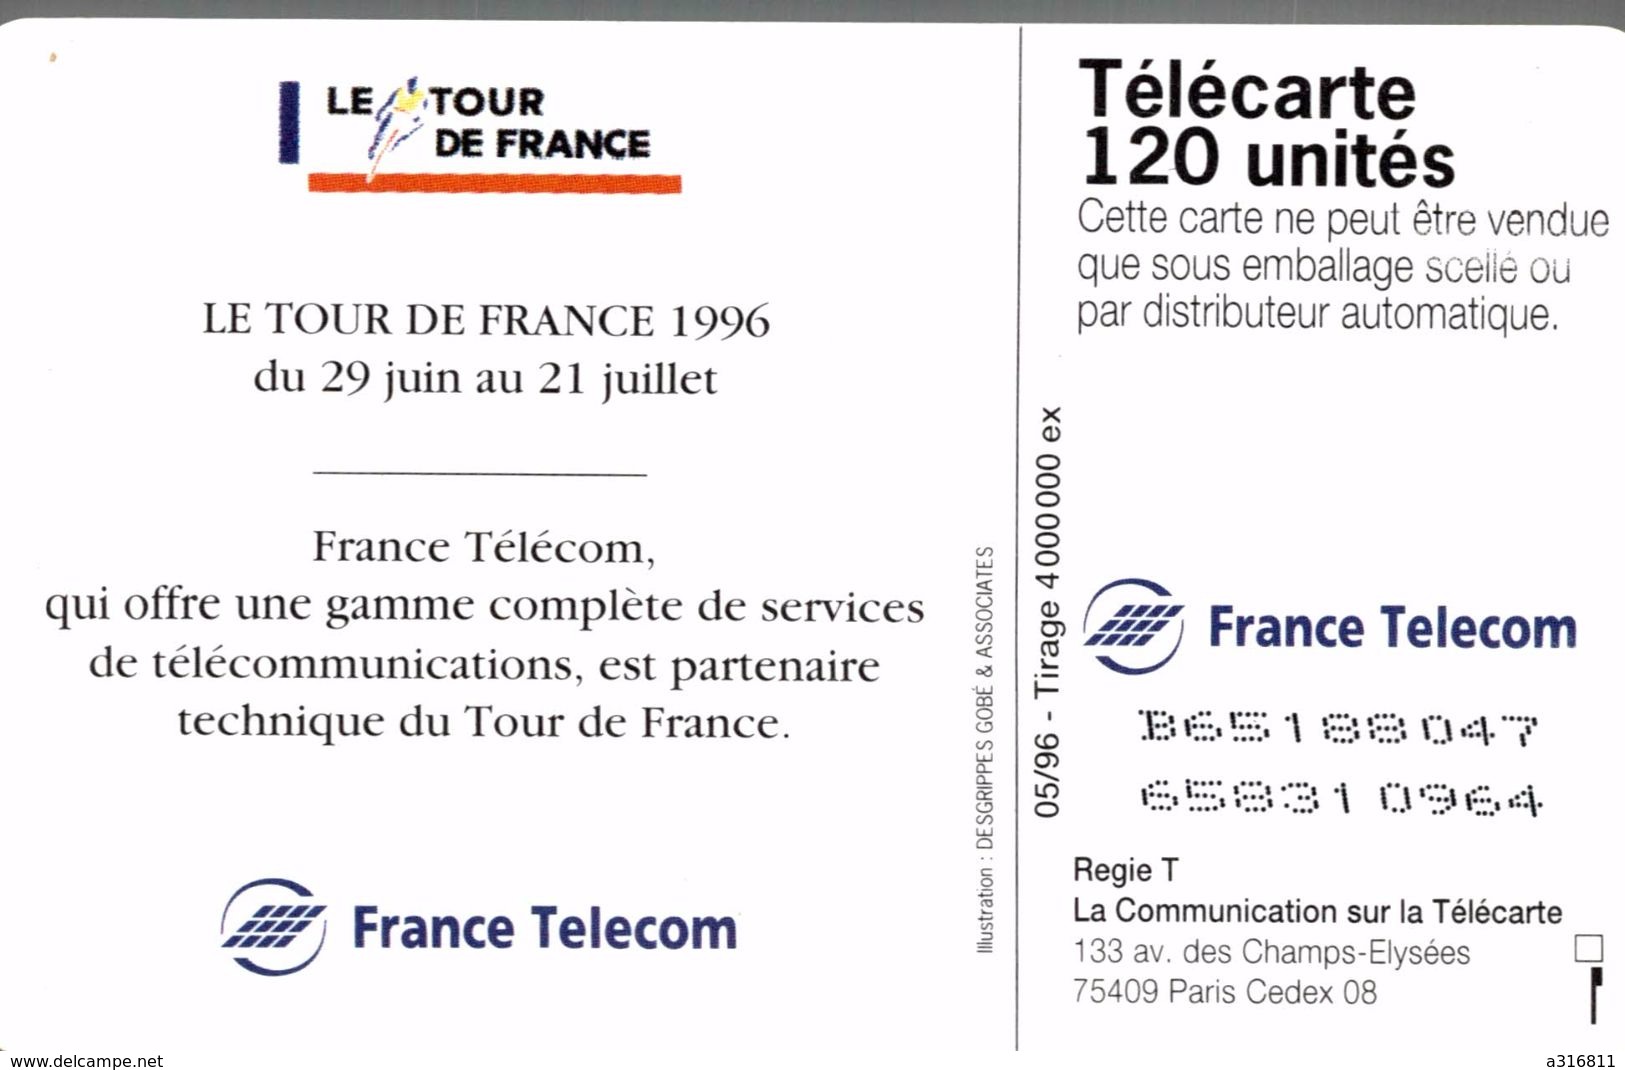 LE TOUR DE FRANCE 96 - 120 Units